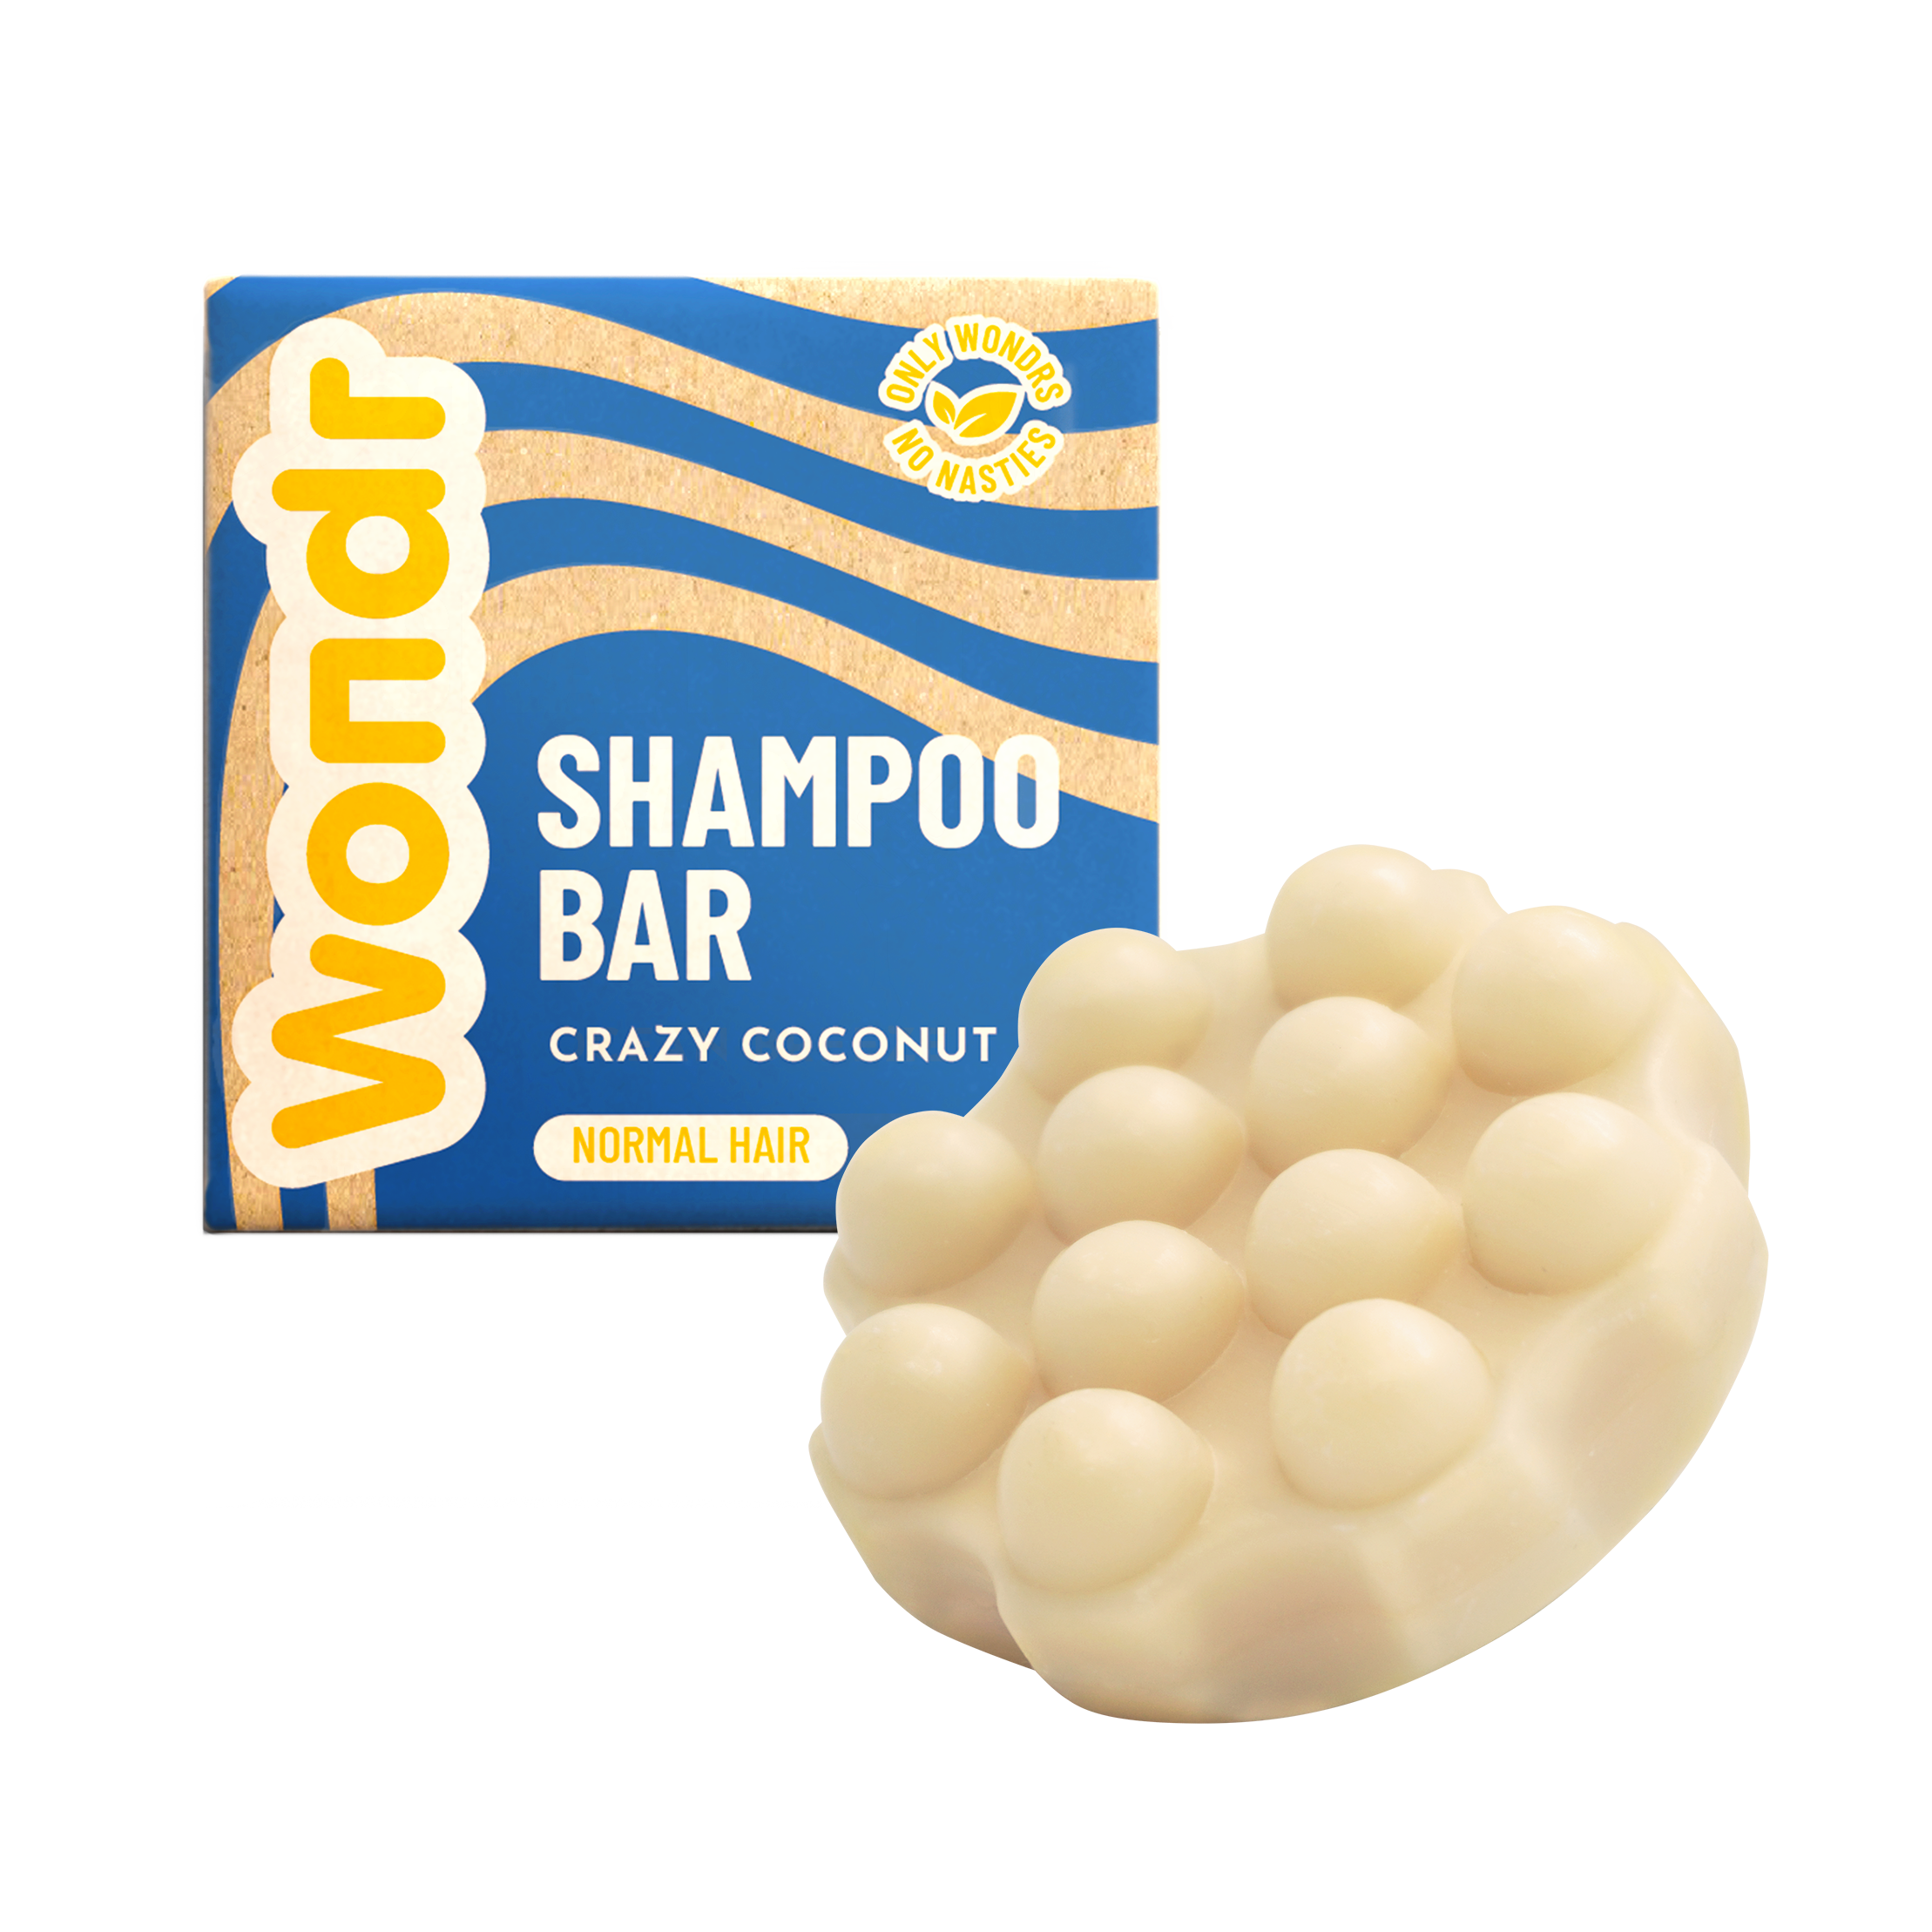 Wondr Crazy coconut shampoo bar